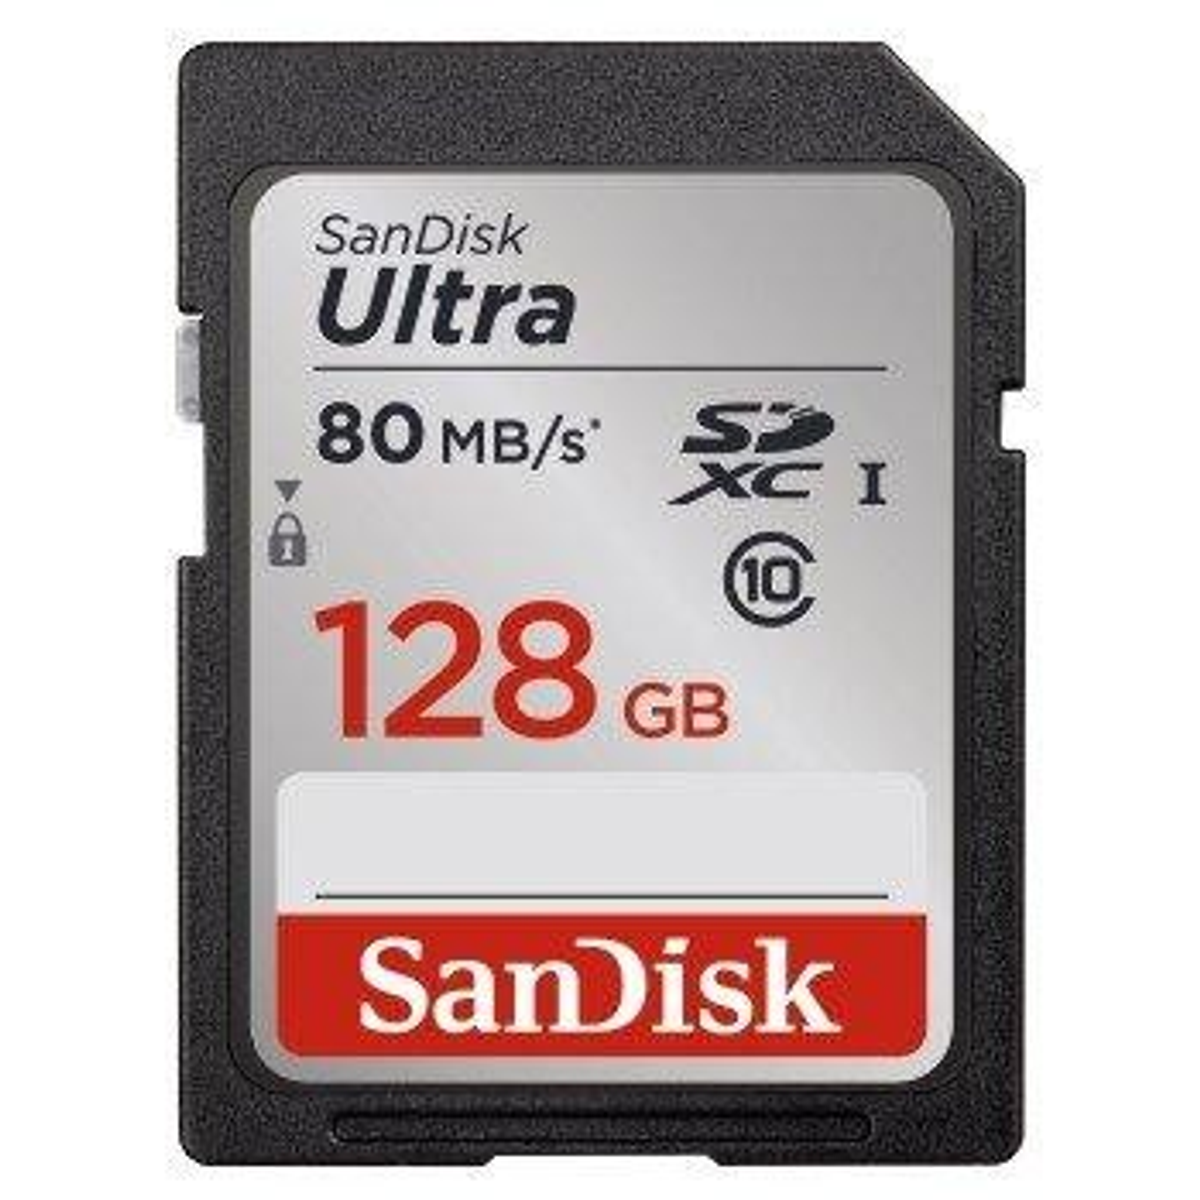 SANDISK 139769 SDXC ULTRA 128GB Speicherkarte, MB/s GB, 128 UHS-I, 80 SD SDXC